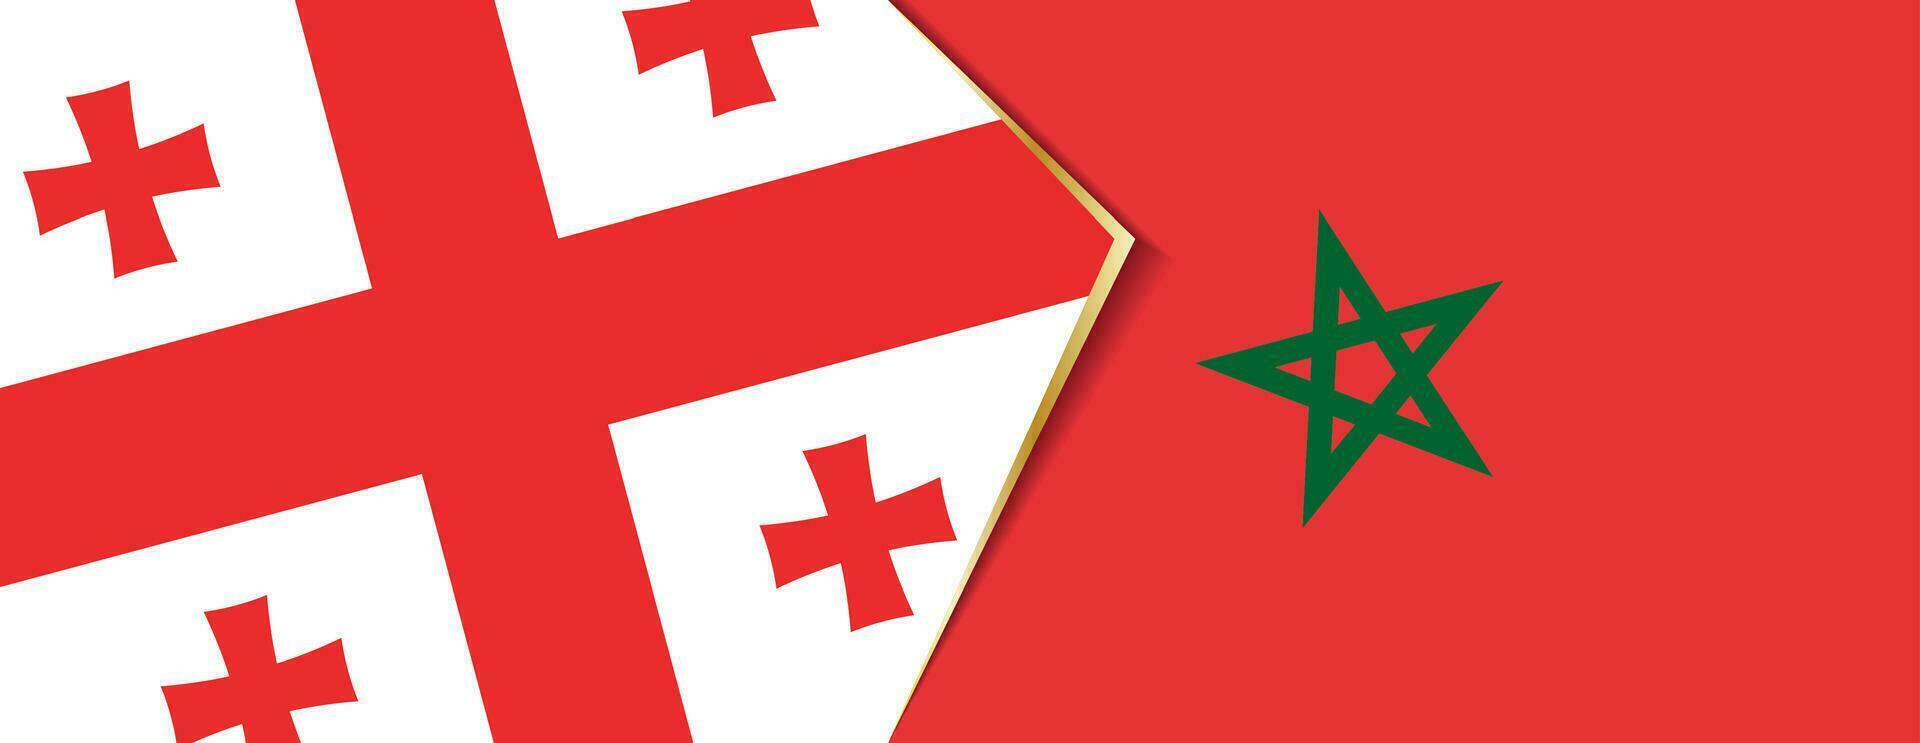 Georgia y Marruecos banderas, dos vector banderas